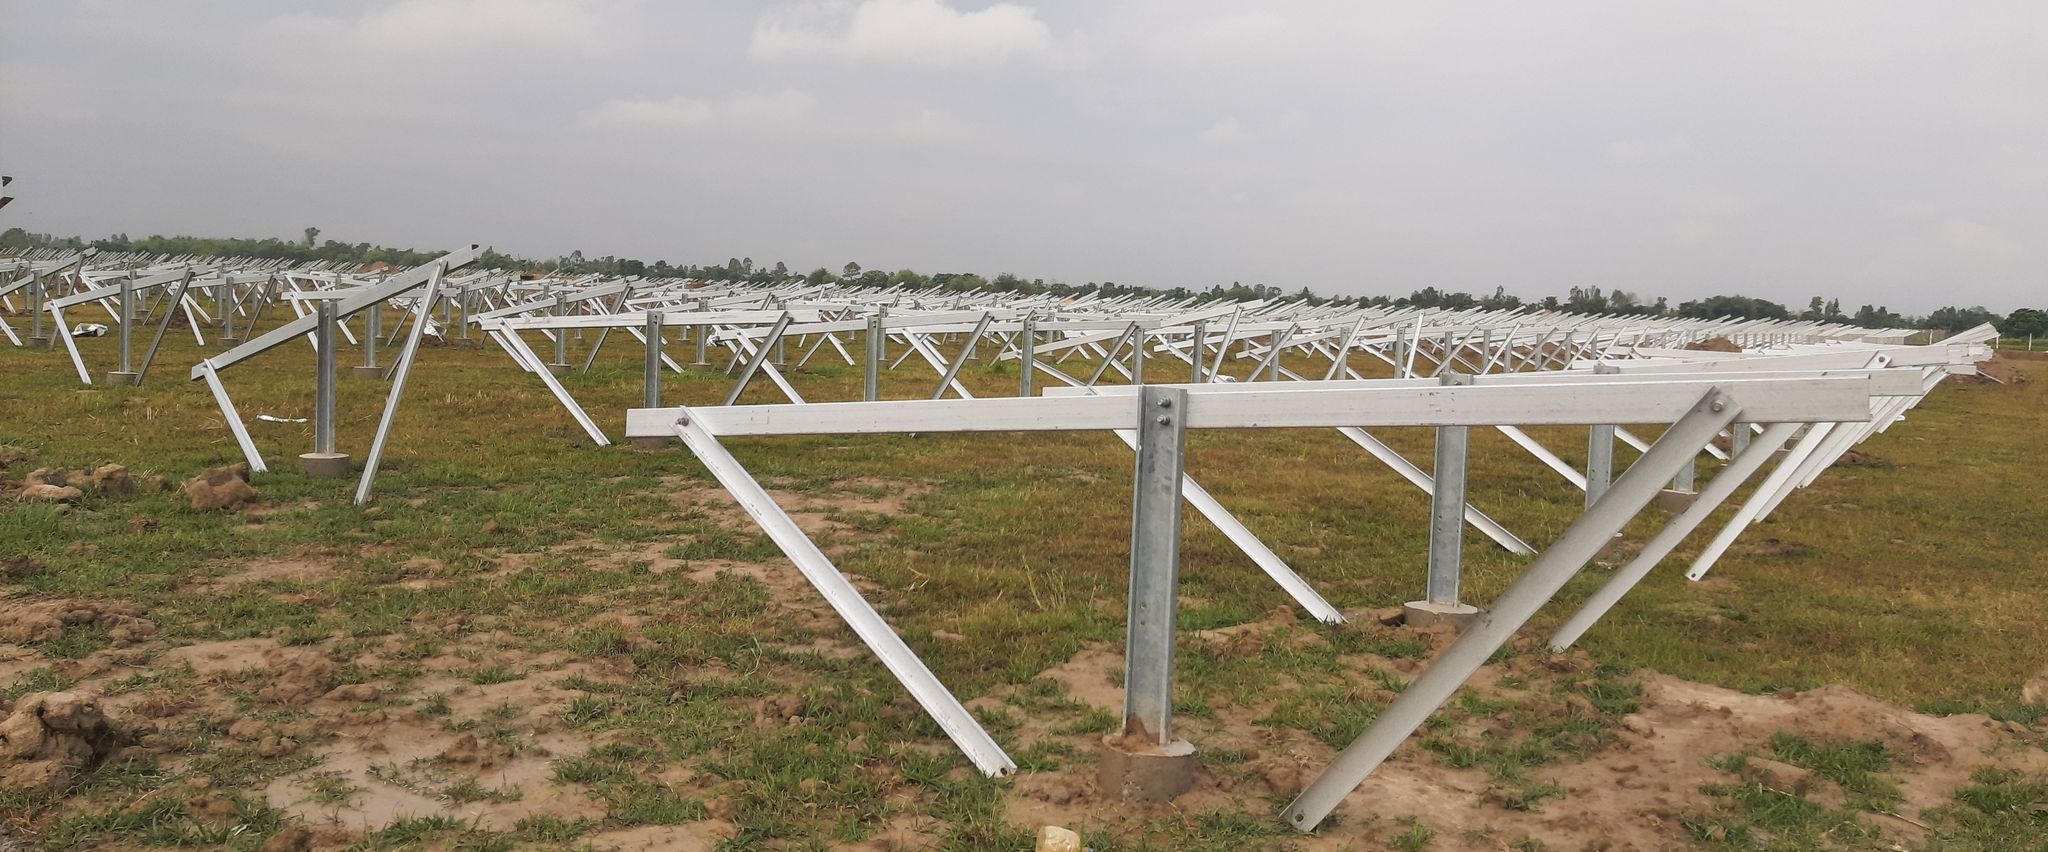 नेपालकै ठूलो सौर्य विद्युत् परियोजनाको काम द्रुतगतिमा